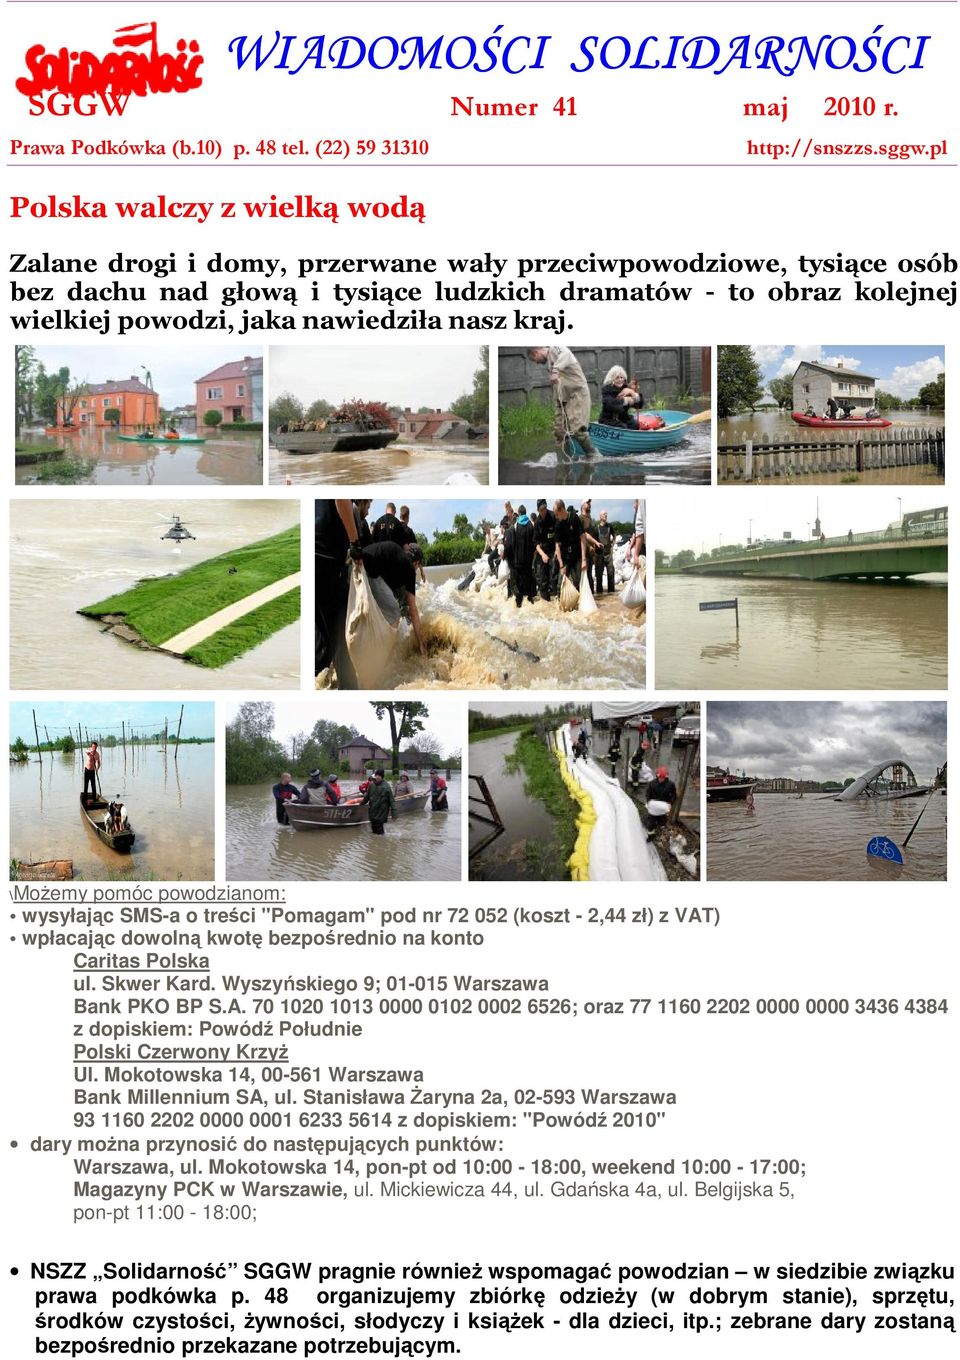 \Możemy pomóc powodzianom: wysyłając SMS-a o treści "Pomagam" pod nr 72 052 (koszt - 2,44 zł) z VAT) wpłacając dowolną kwotę bezpośrednio na konto Caritas Polska ul. Skwer Kard.